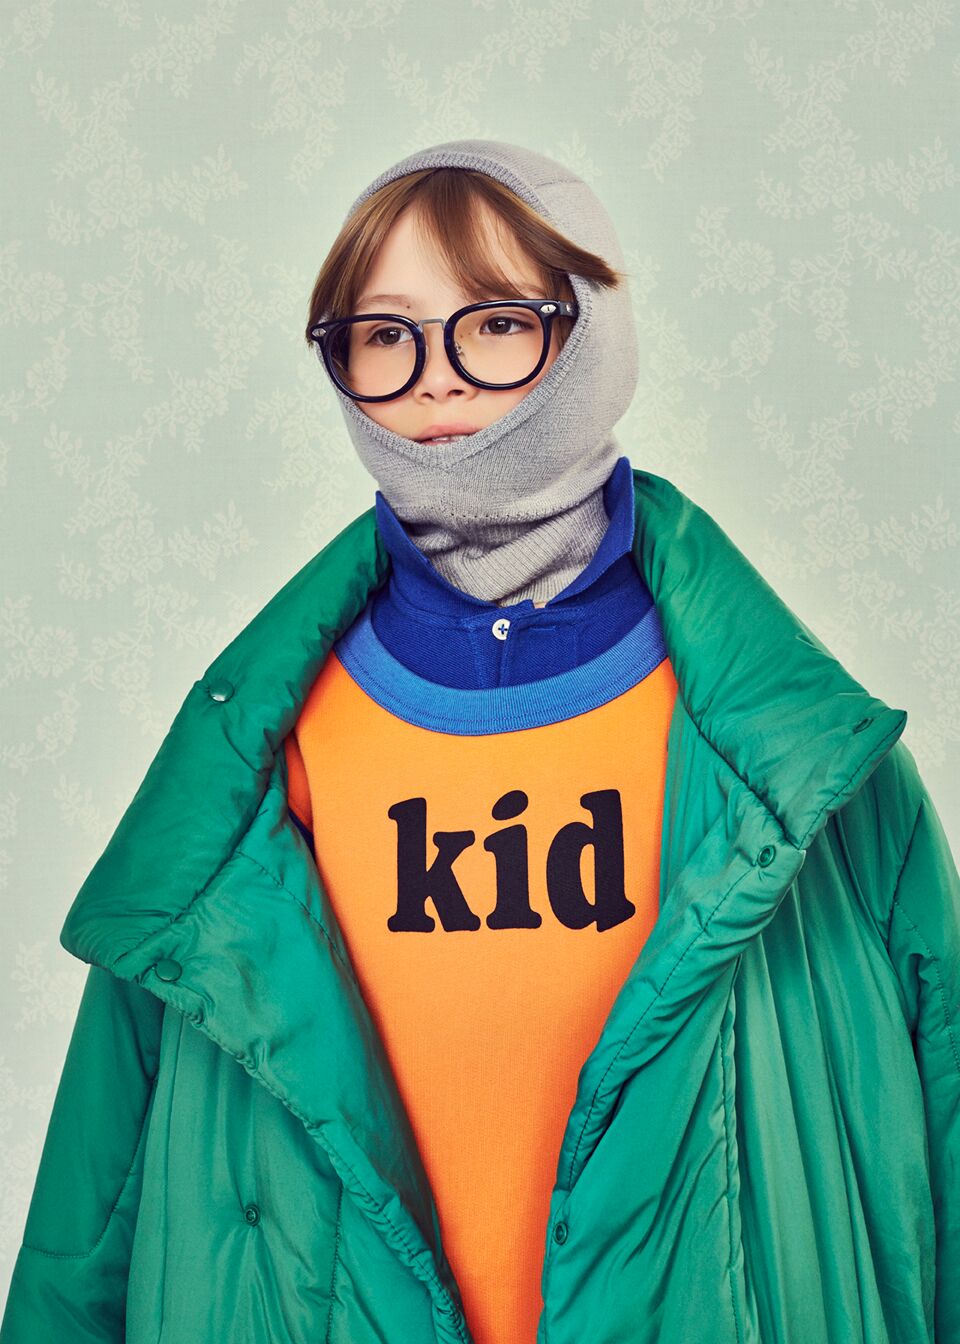 PARTY WEIRDO kids fashion editorial